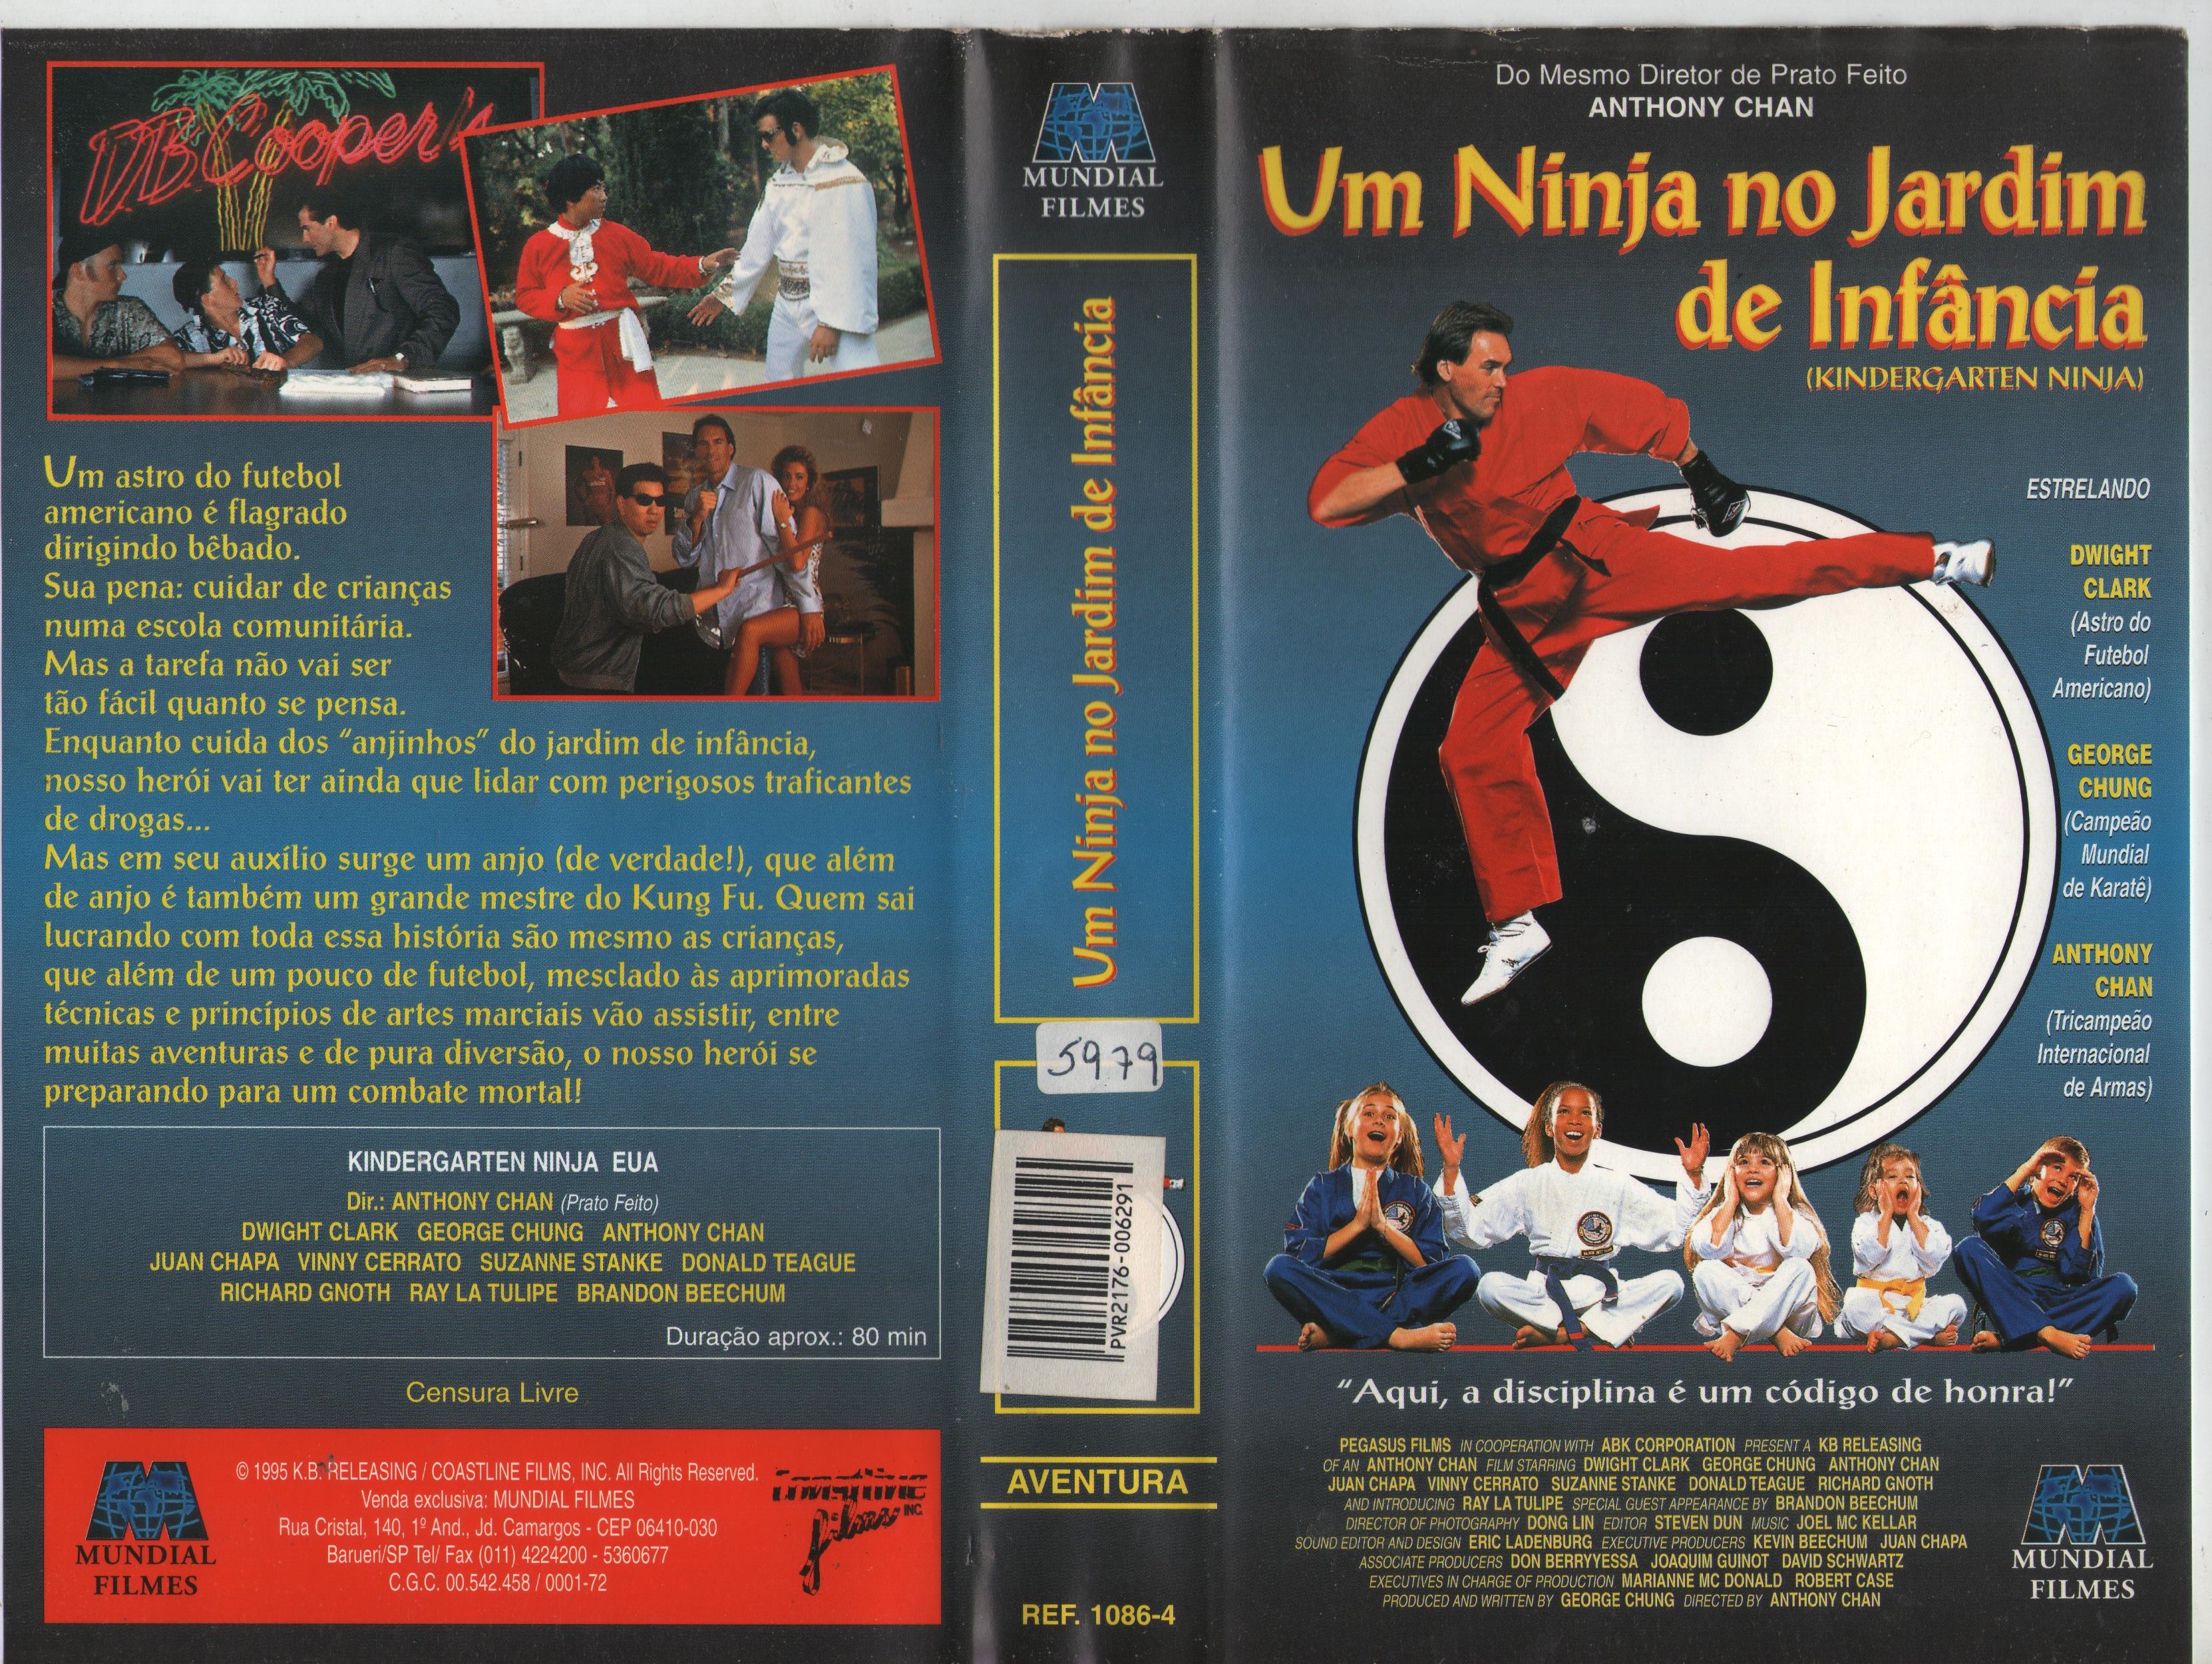 Kindergarten Ninja (1994) Screenshot 3 